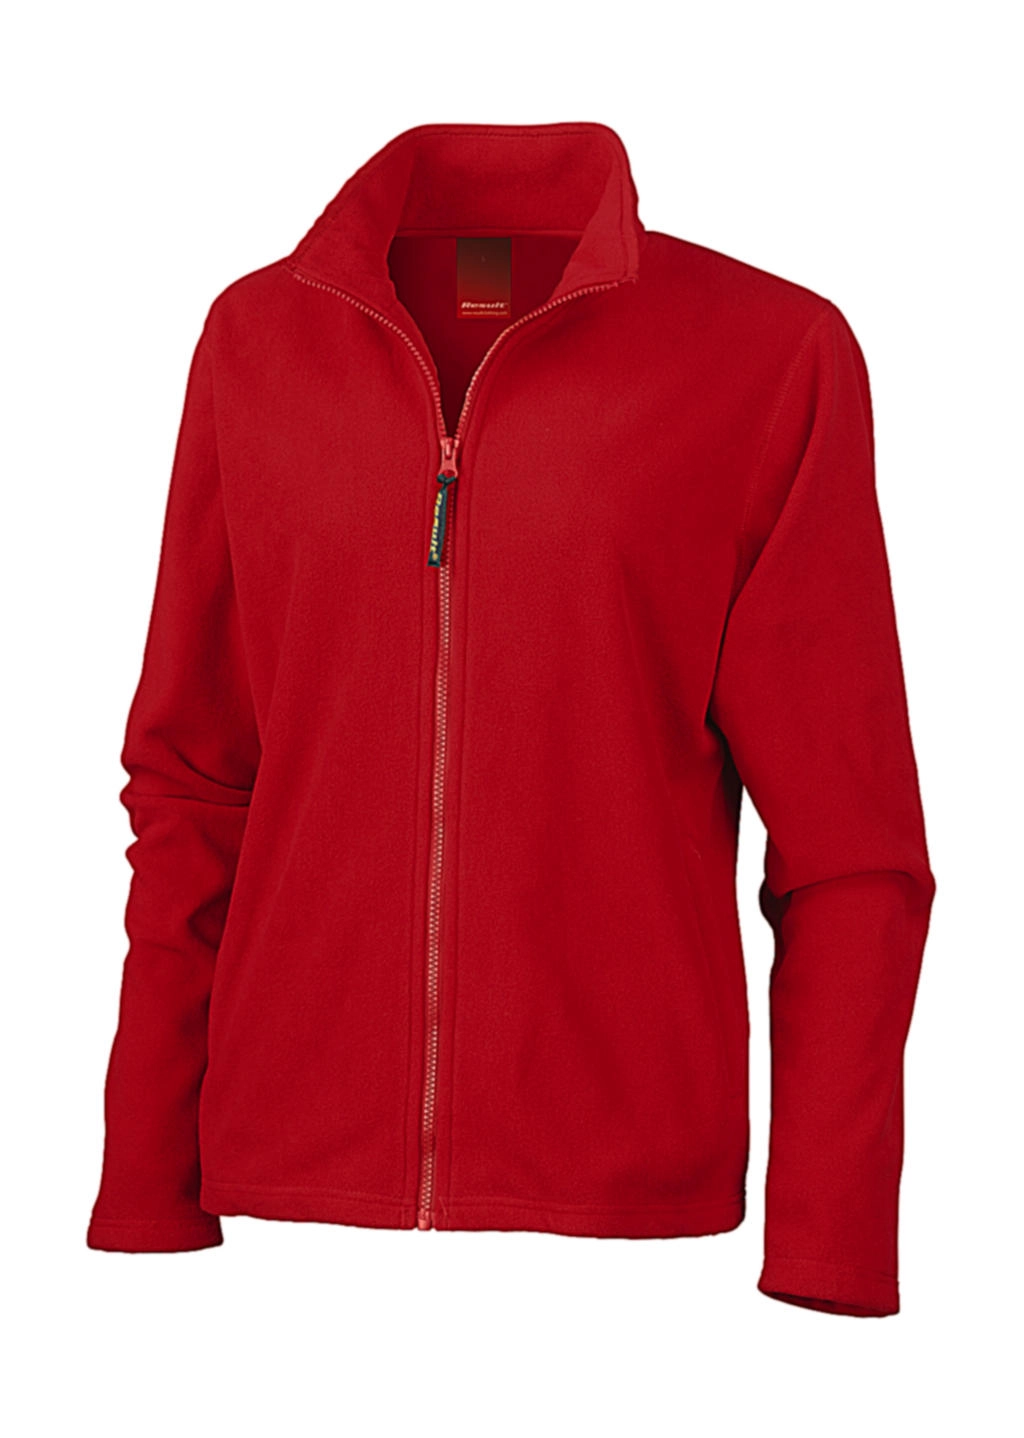 Ladies Horizon High Grade Microfleece Jacket zum Besticken und Bedrucken in der Farbe Cardinal Red mit Ihren Logo, Schriftzug oder Motiv.